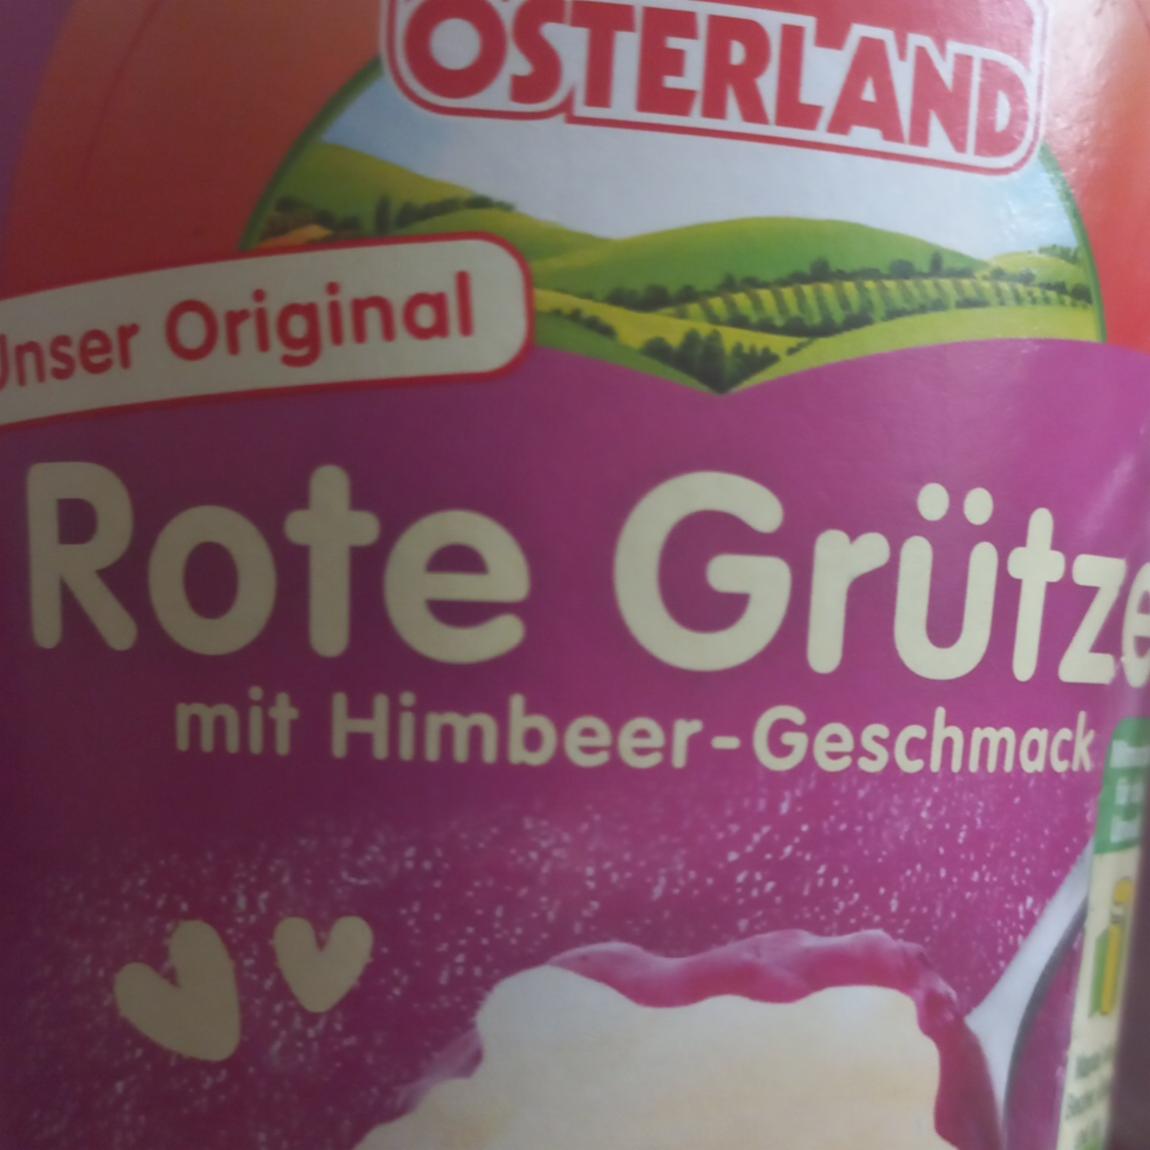 Fotografie - Rote Grütze mit Himbeer Geschmack Osterland